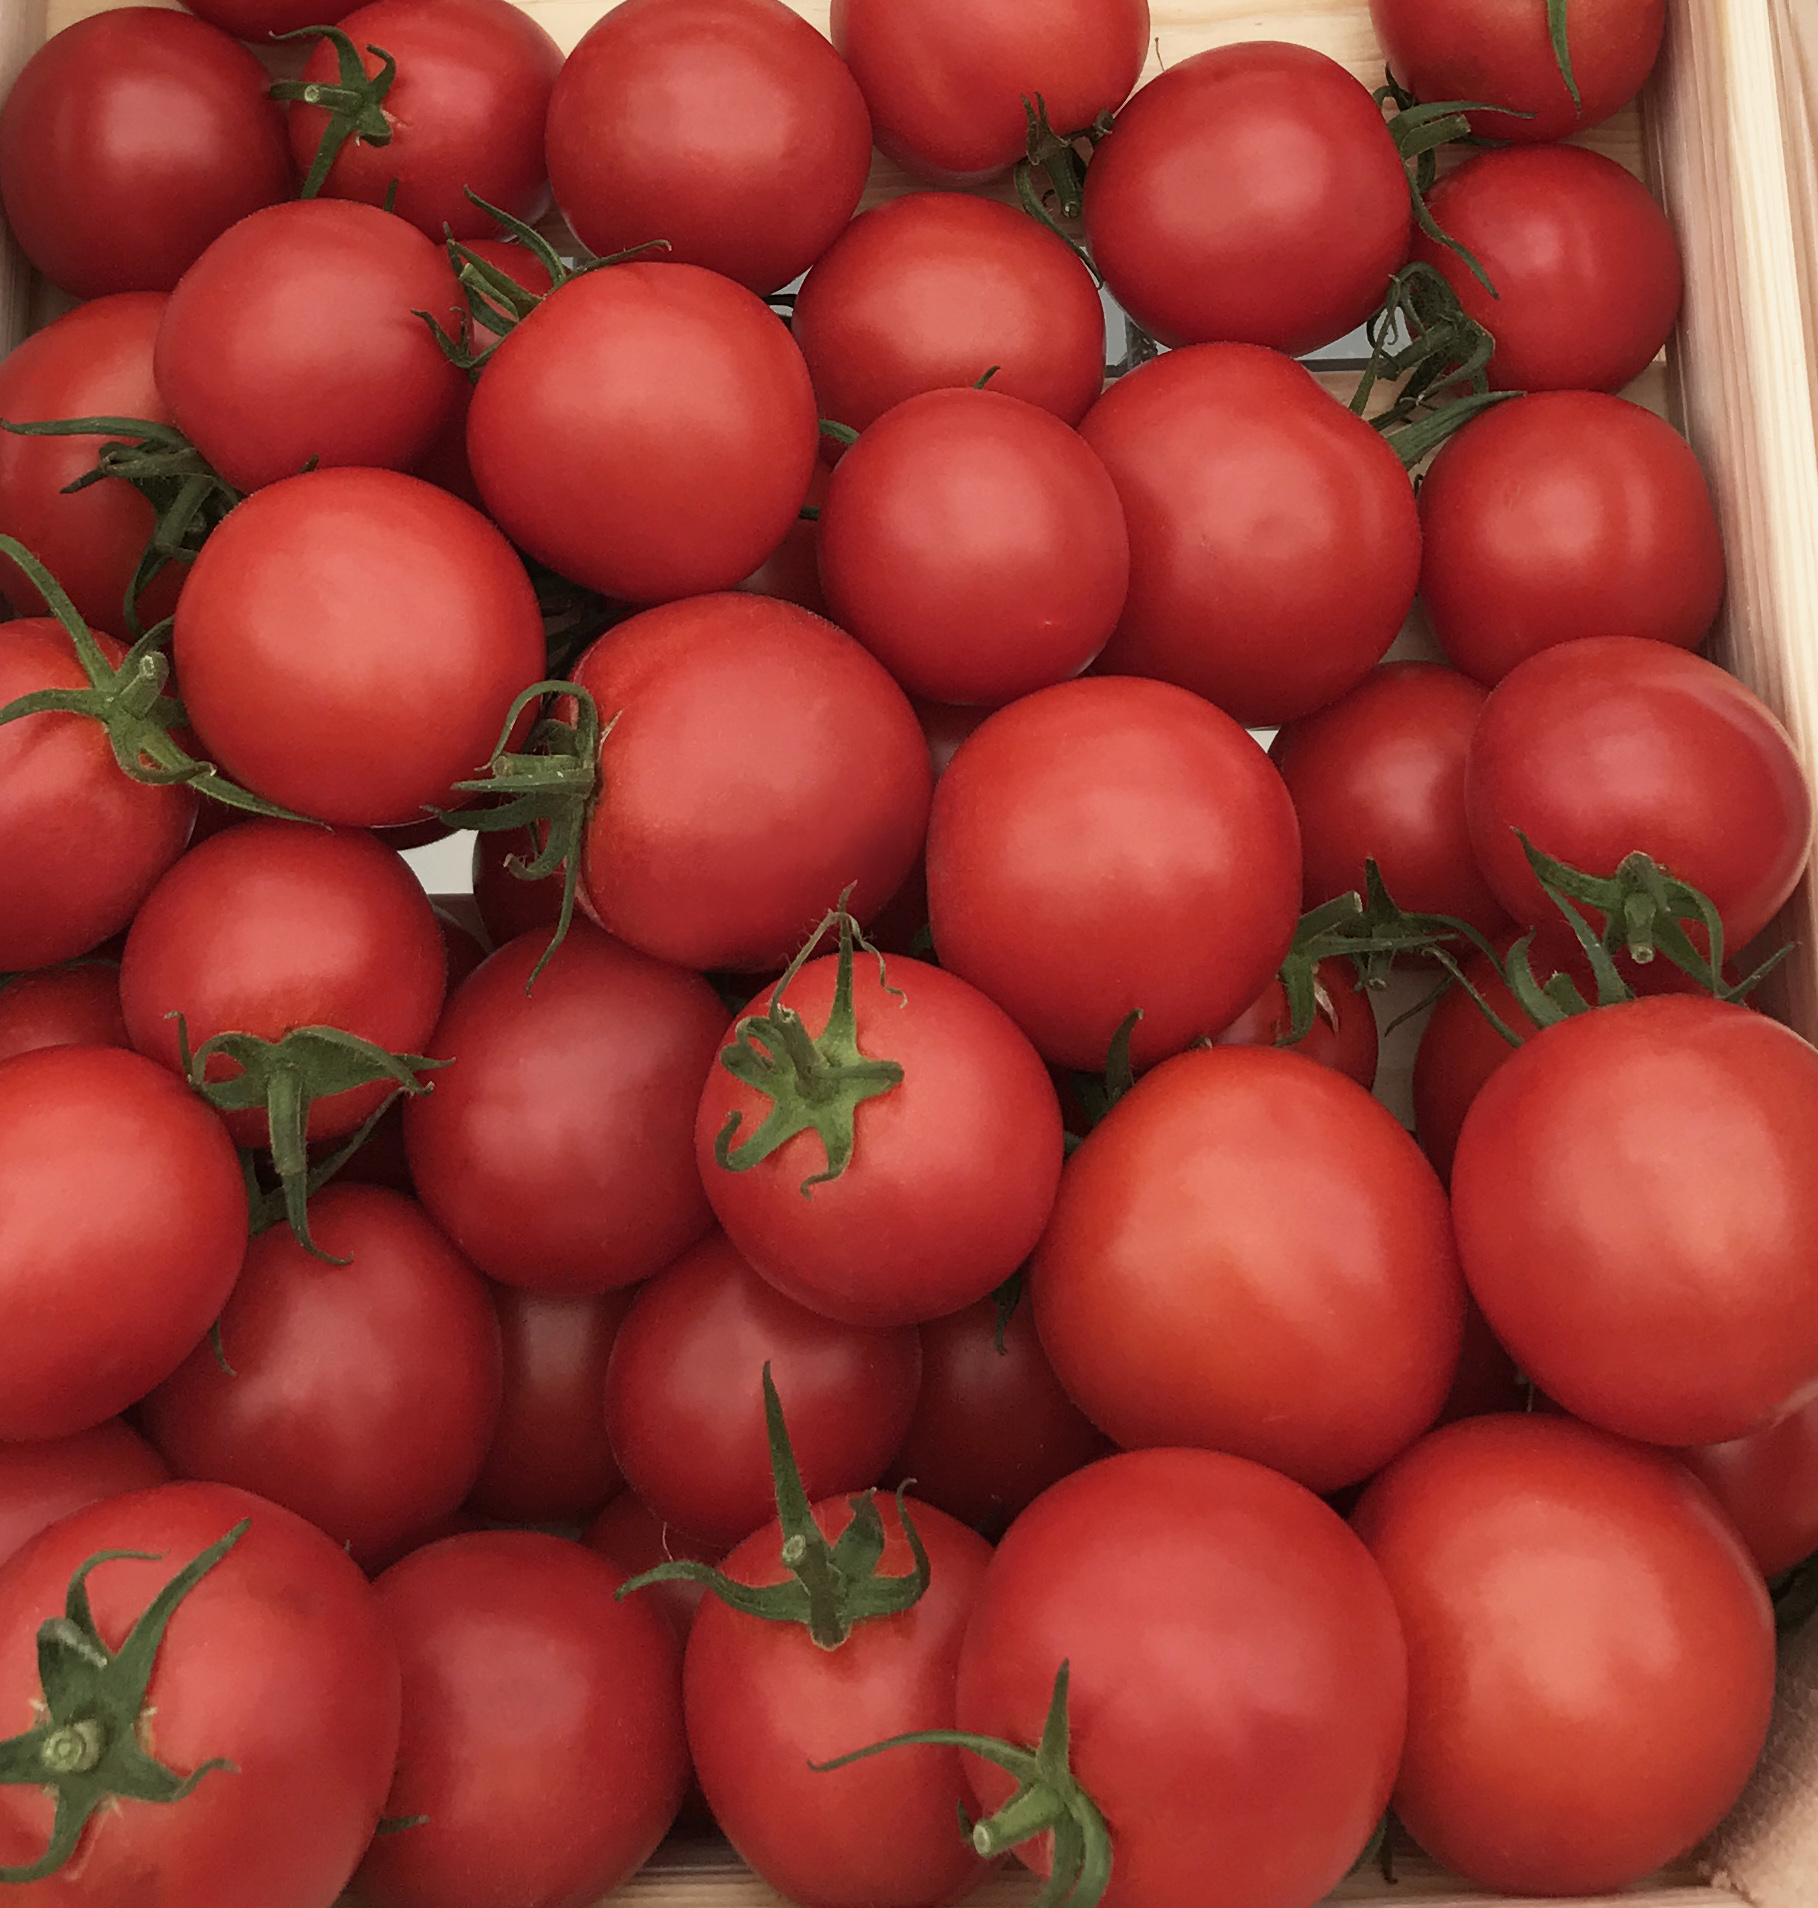 Купить томаты толстой